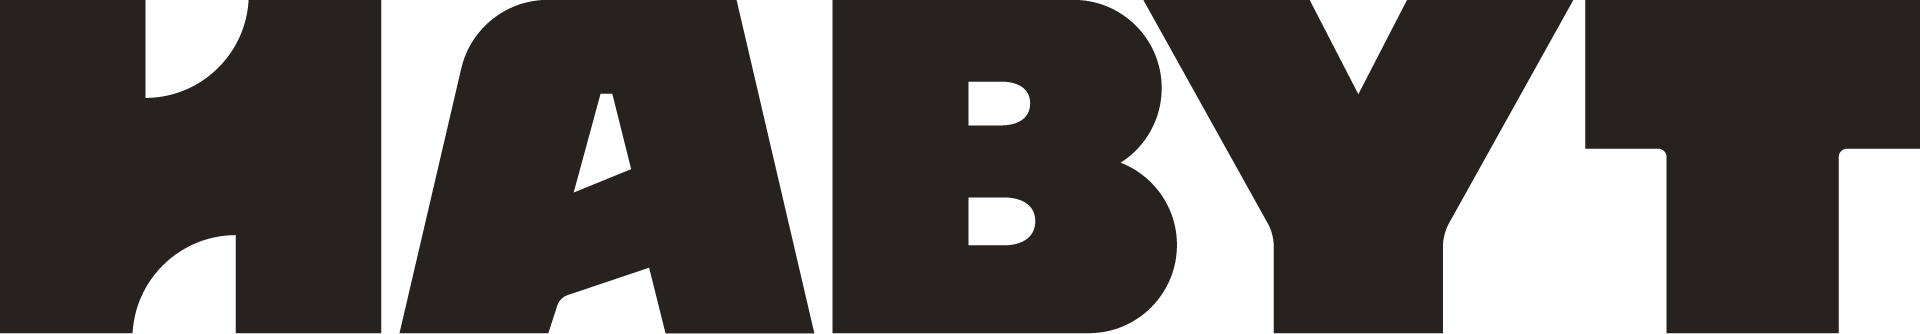 Habyt_Logo_Wordmark_Rich_Black_RGB_1920px